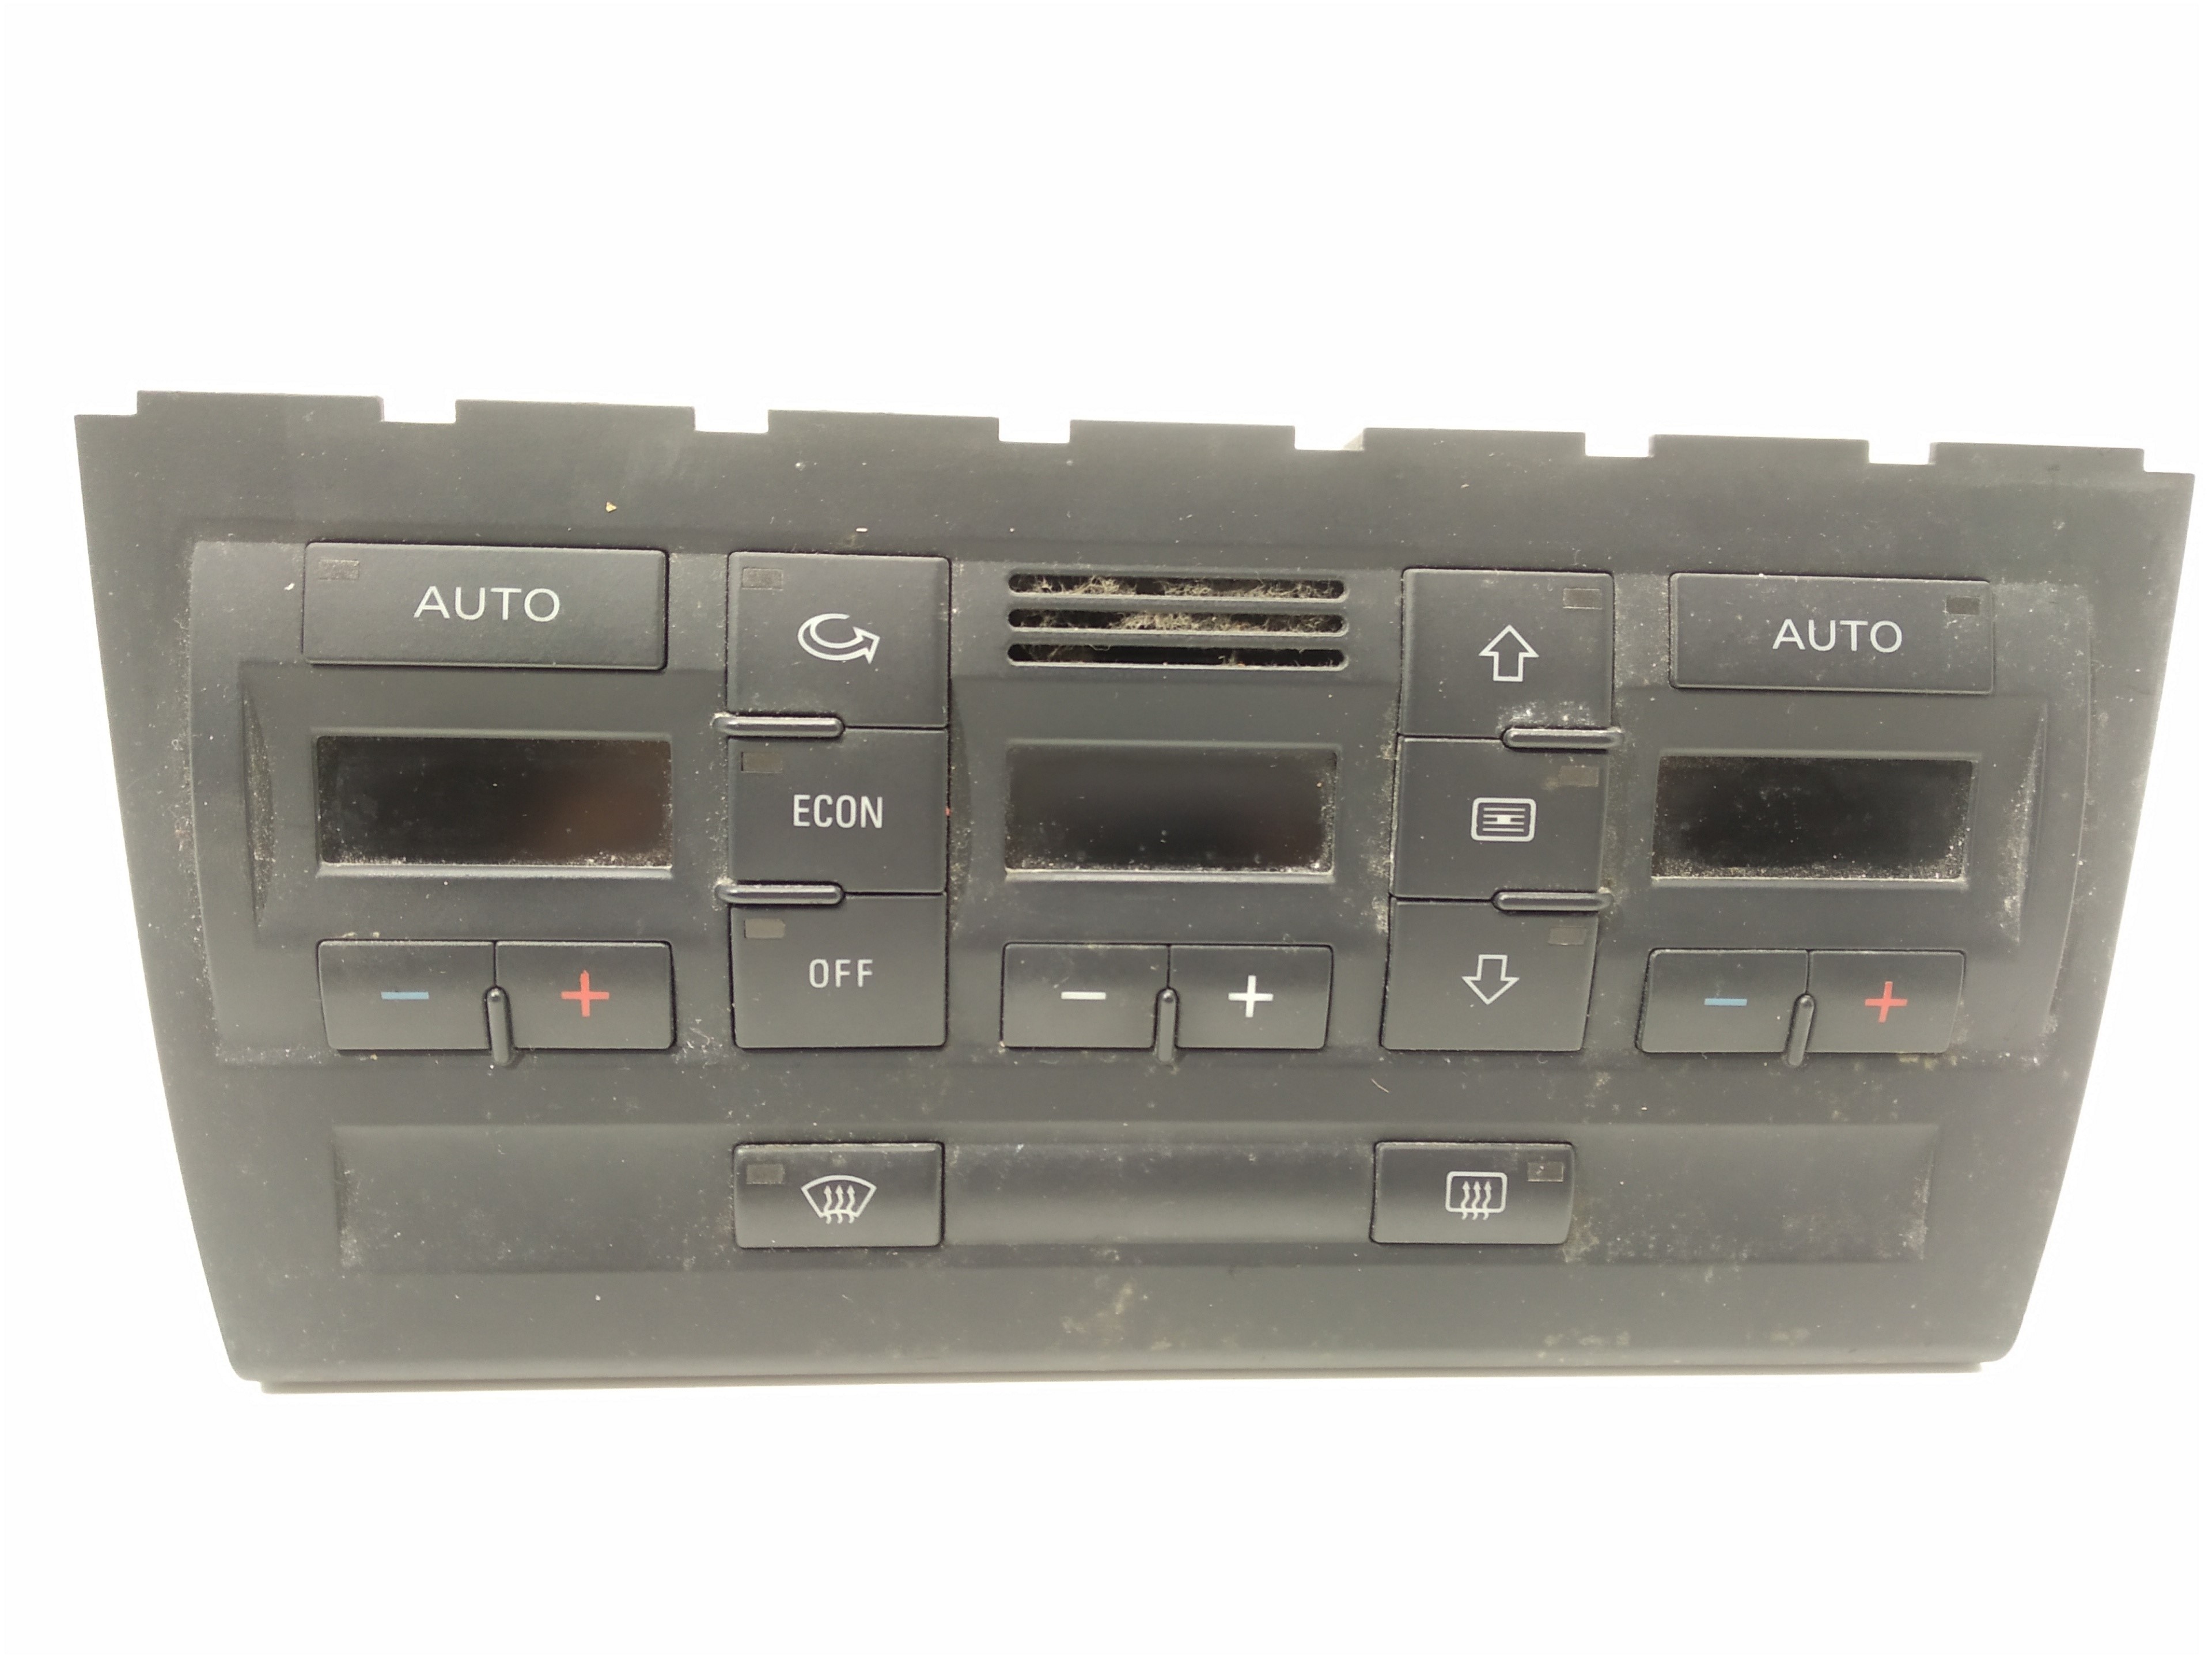 AUDI A4 B6/8E (2000-2005) Pегулятор климы 8E0820043BL, 8E0820043BL, 8E0820043BL 19339260